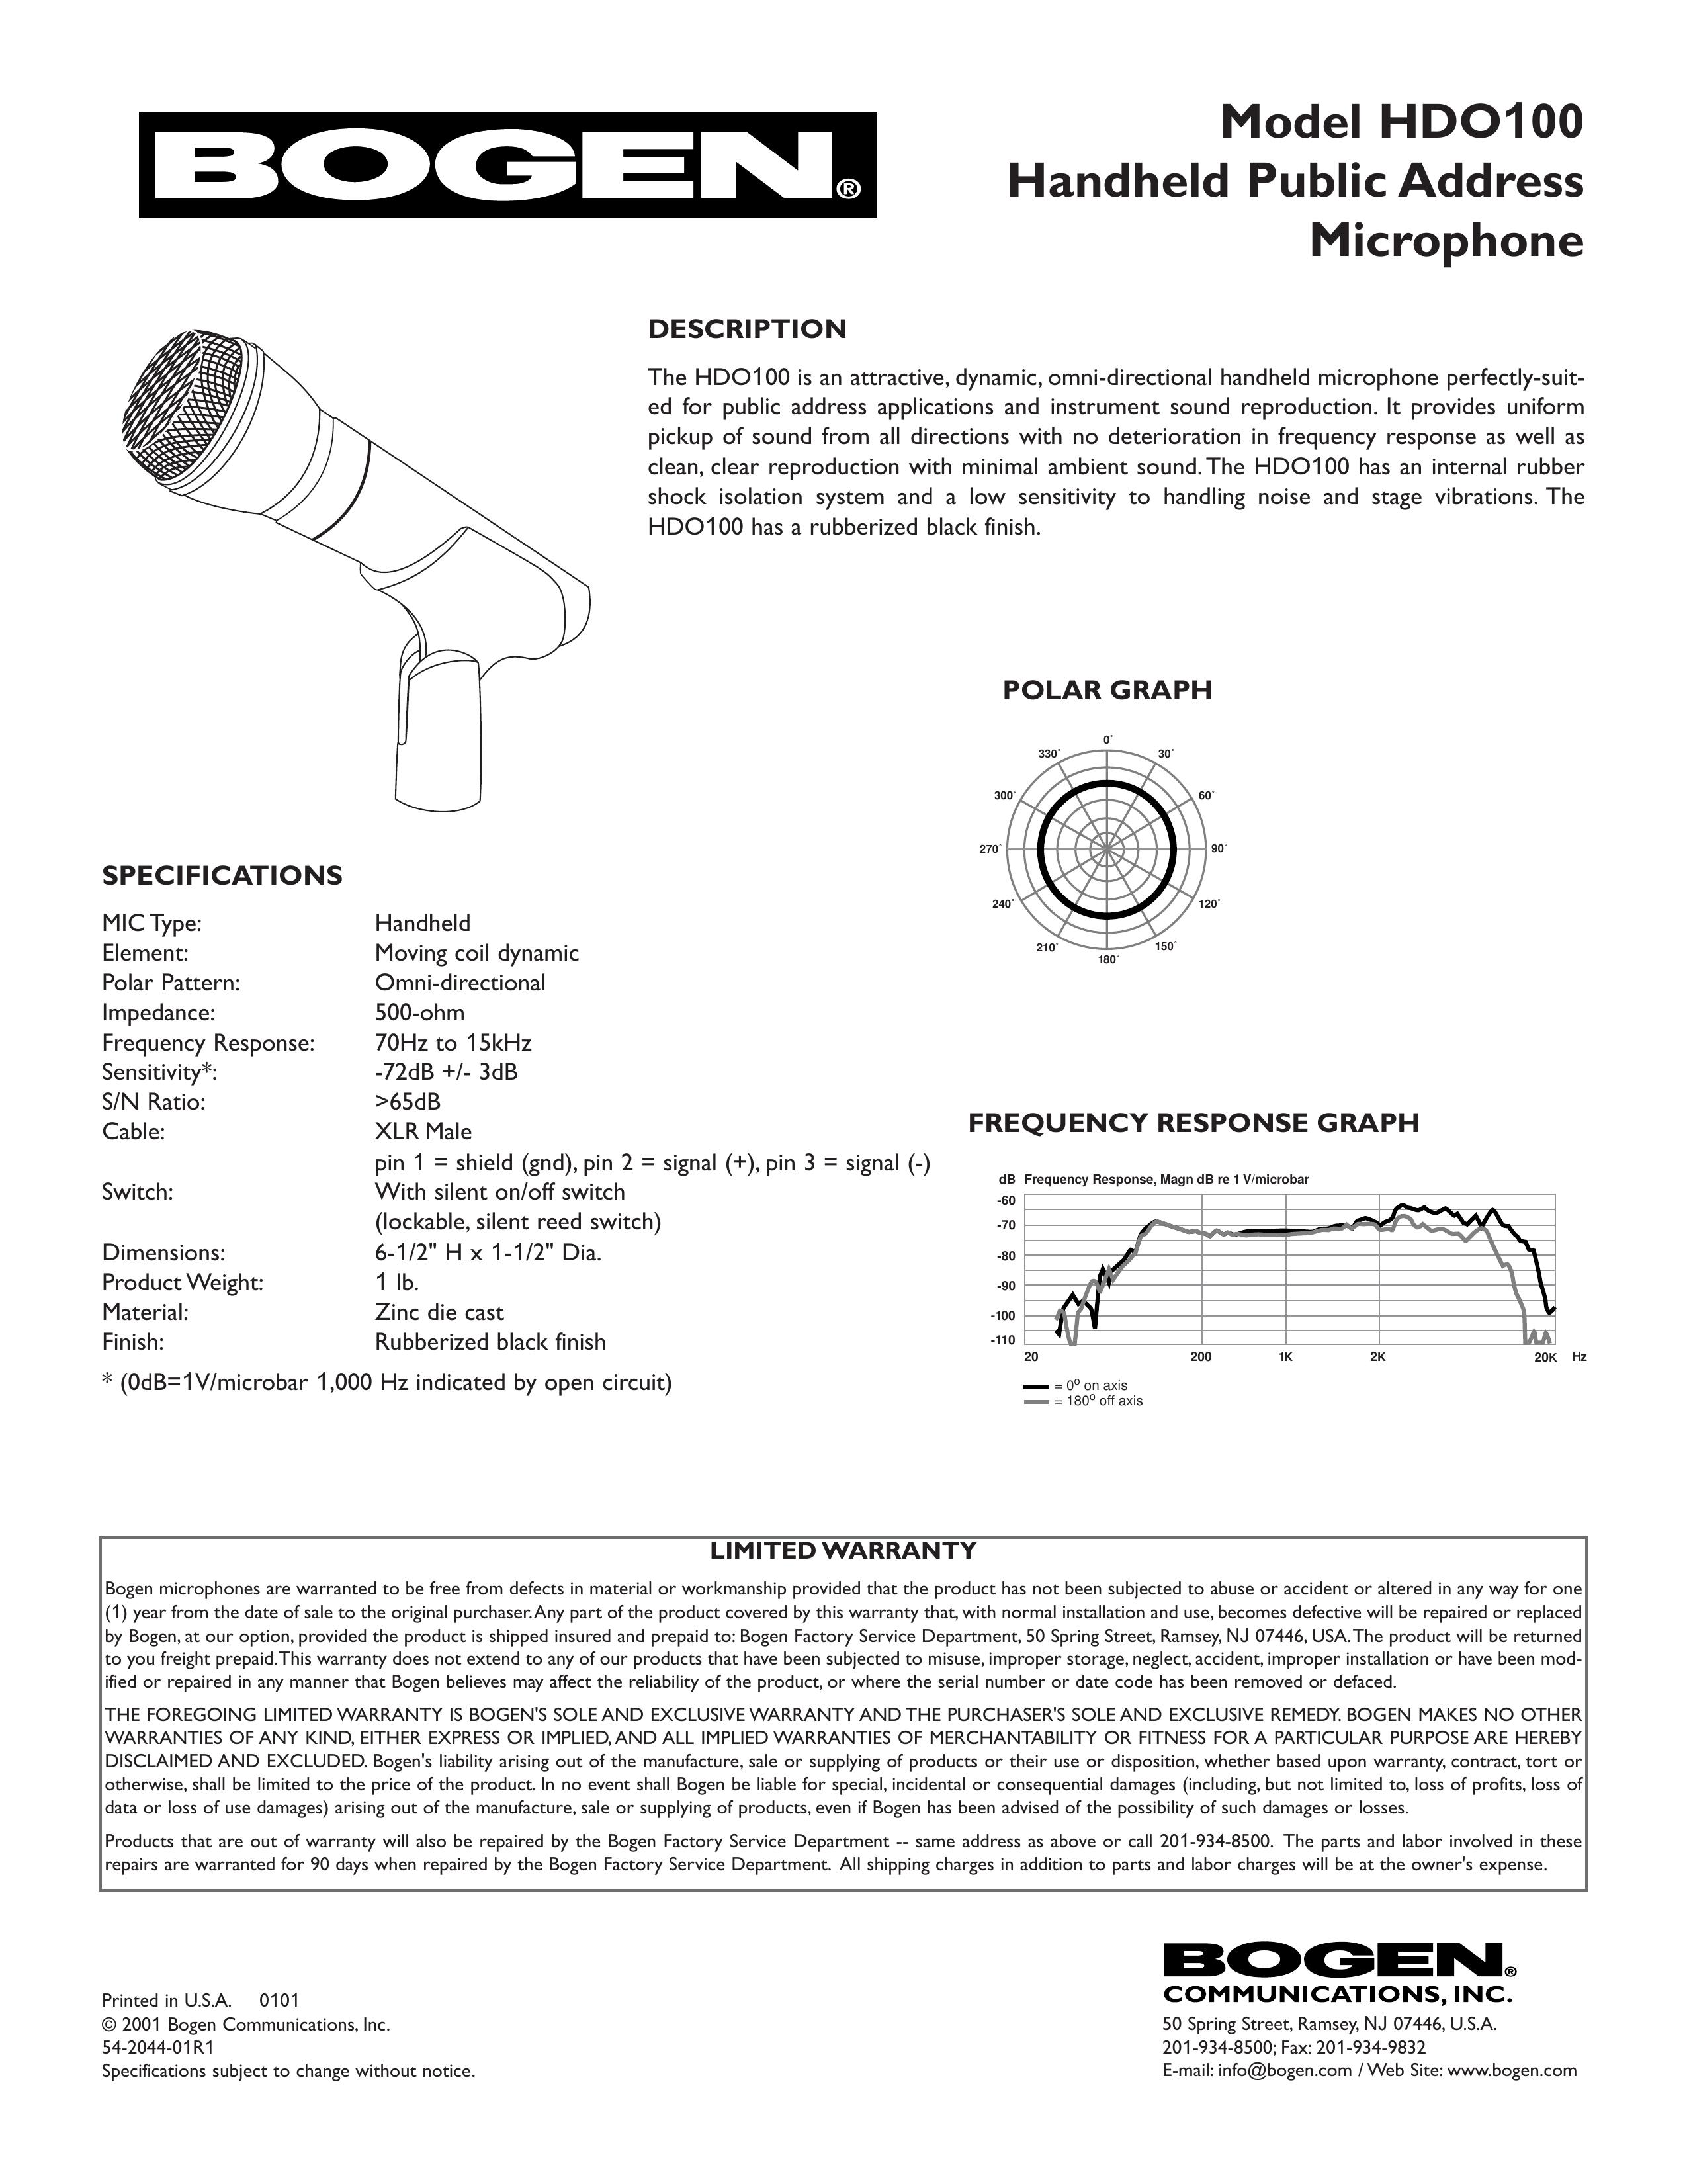 Bogen HDO100 Microphone User Manual